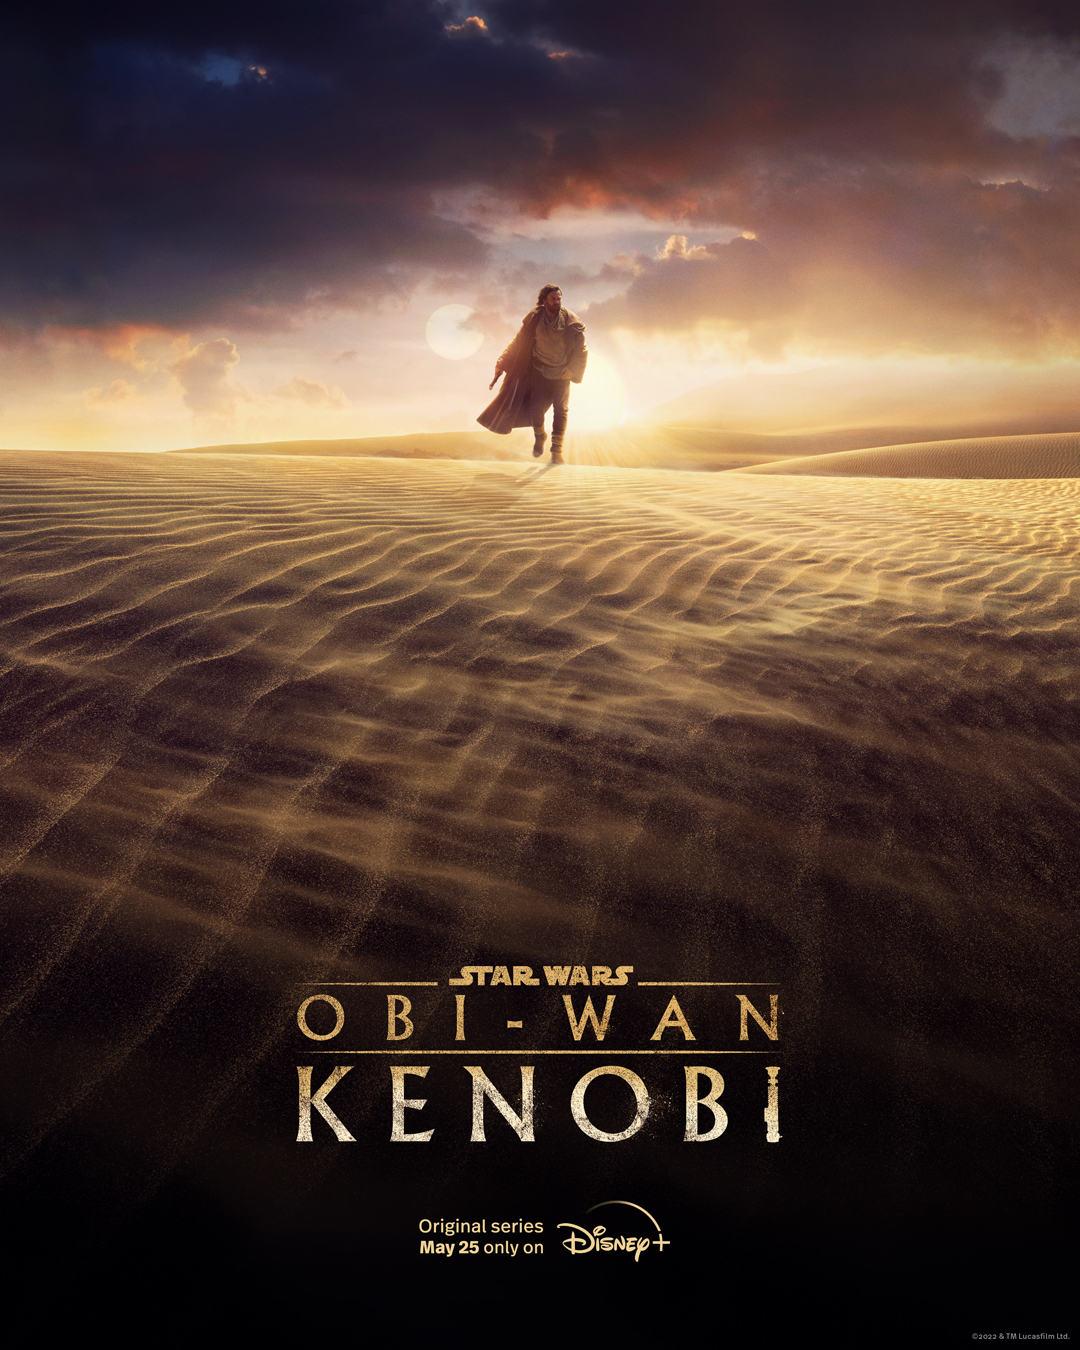 Miniseria Obi-Wan Kenobi va fi lansată la 25 mai pe platforma Disney+. Este cea mai aşteptată producţie a anului pentru fanii Star Wars